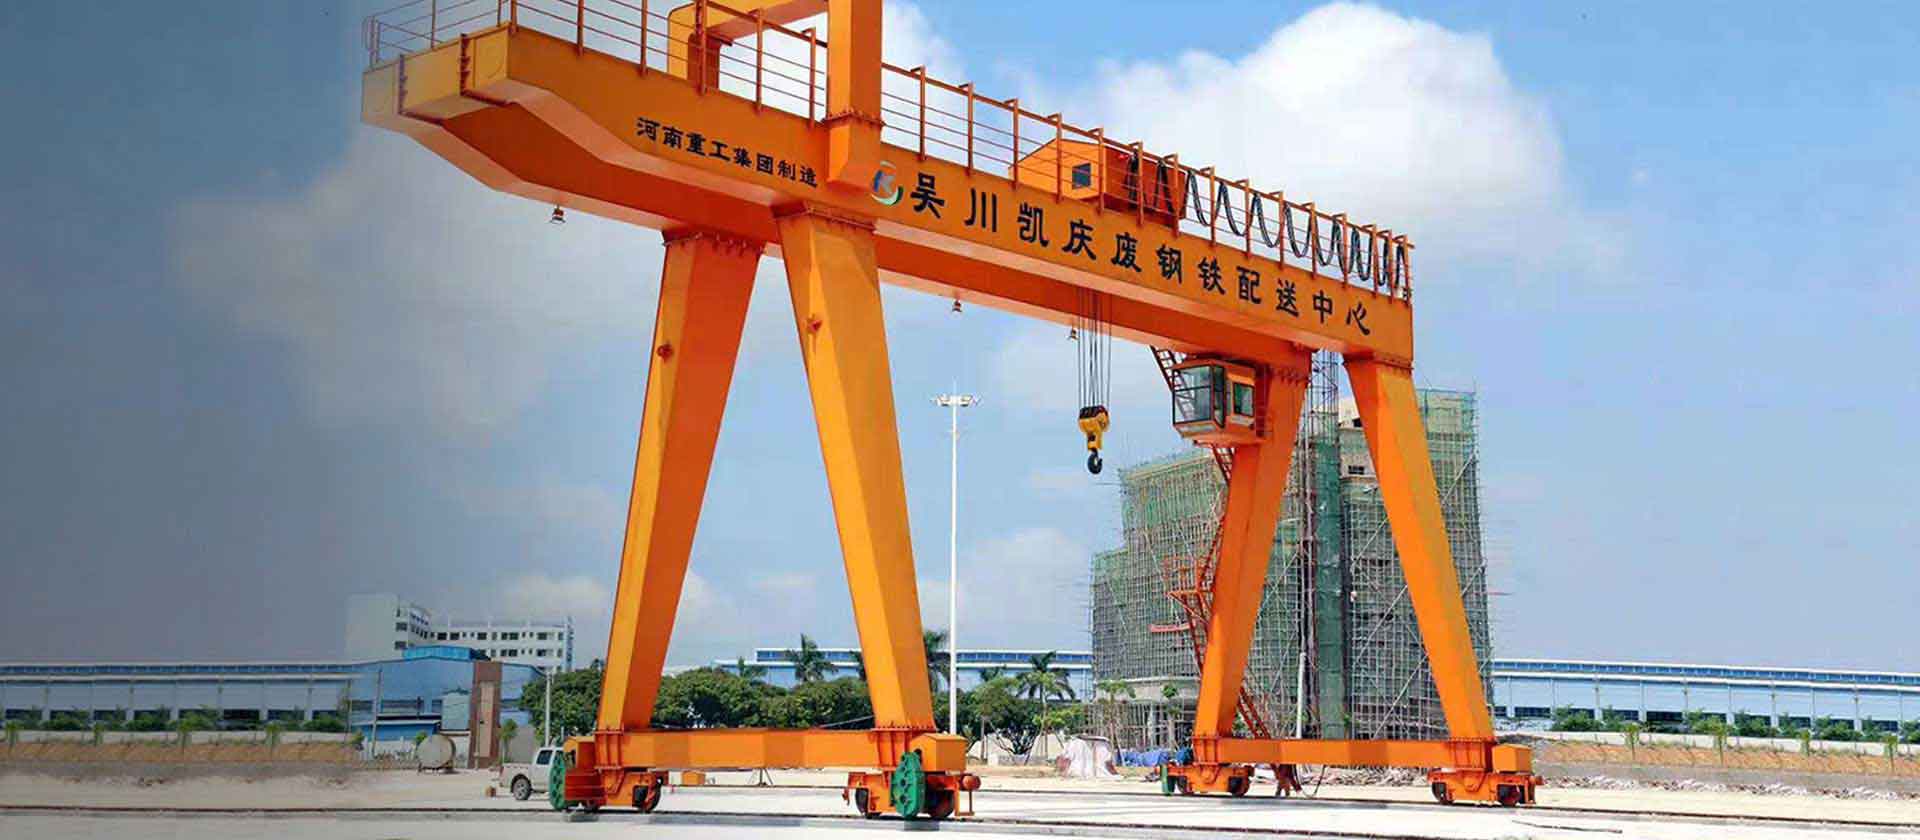 Zhonggong Crane